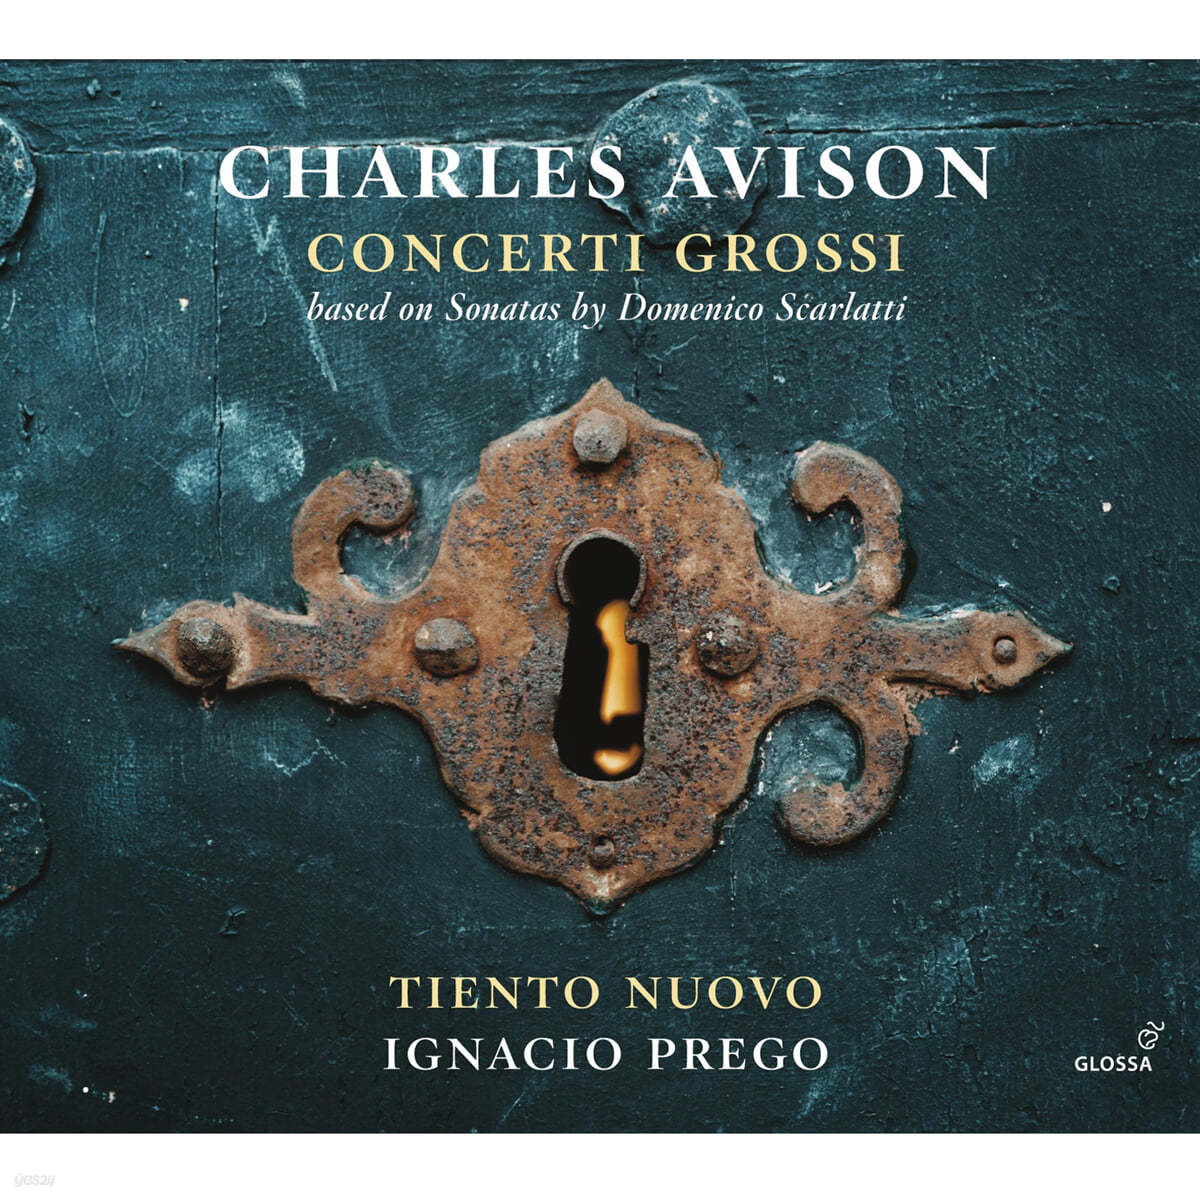 Tiento Nuovo / Ignacio Prego 찰스 에이비슨: 합주 협주곡집 (Charles Avison: Concerti Grossi - based on Sonatas by Domenico Scarlatti) 